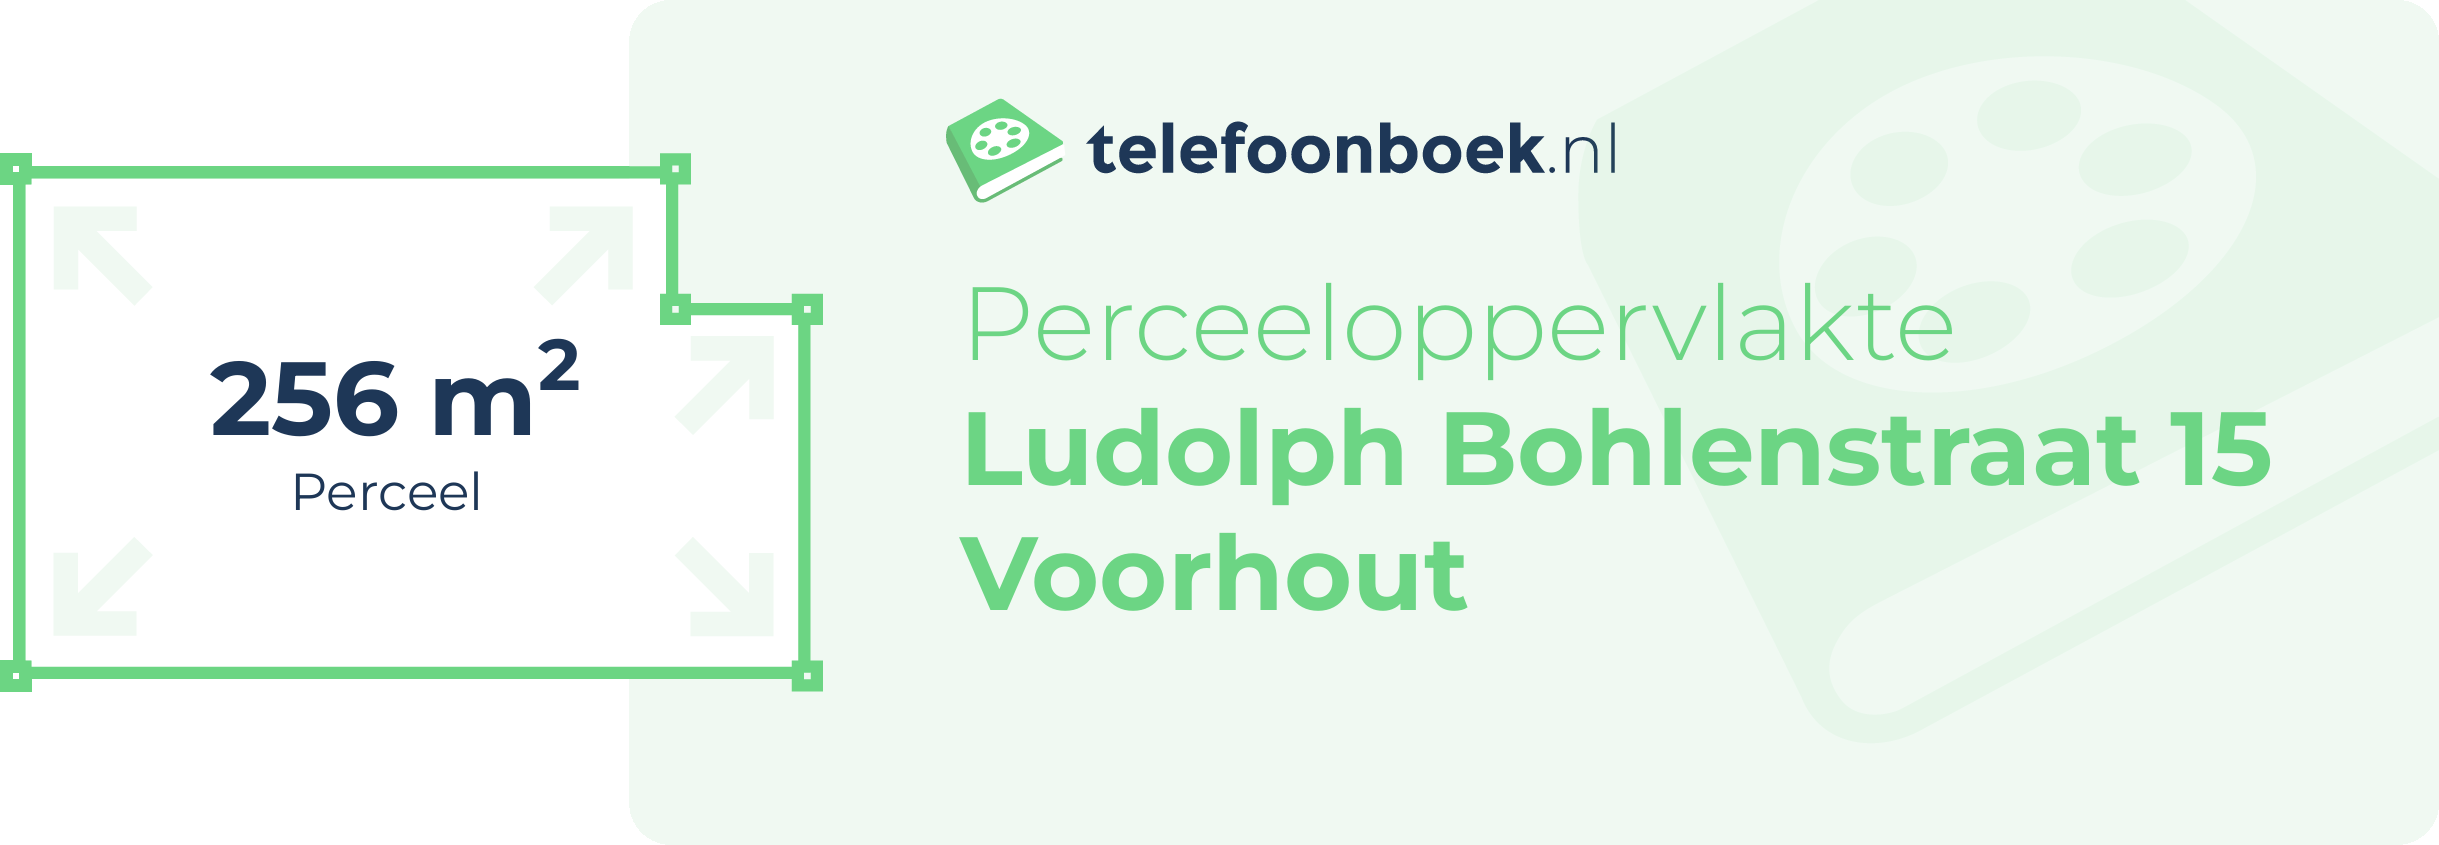 Perceeloppervlakte Ludolph Bohlenstraat 15 Voorhout